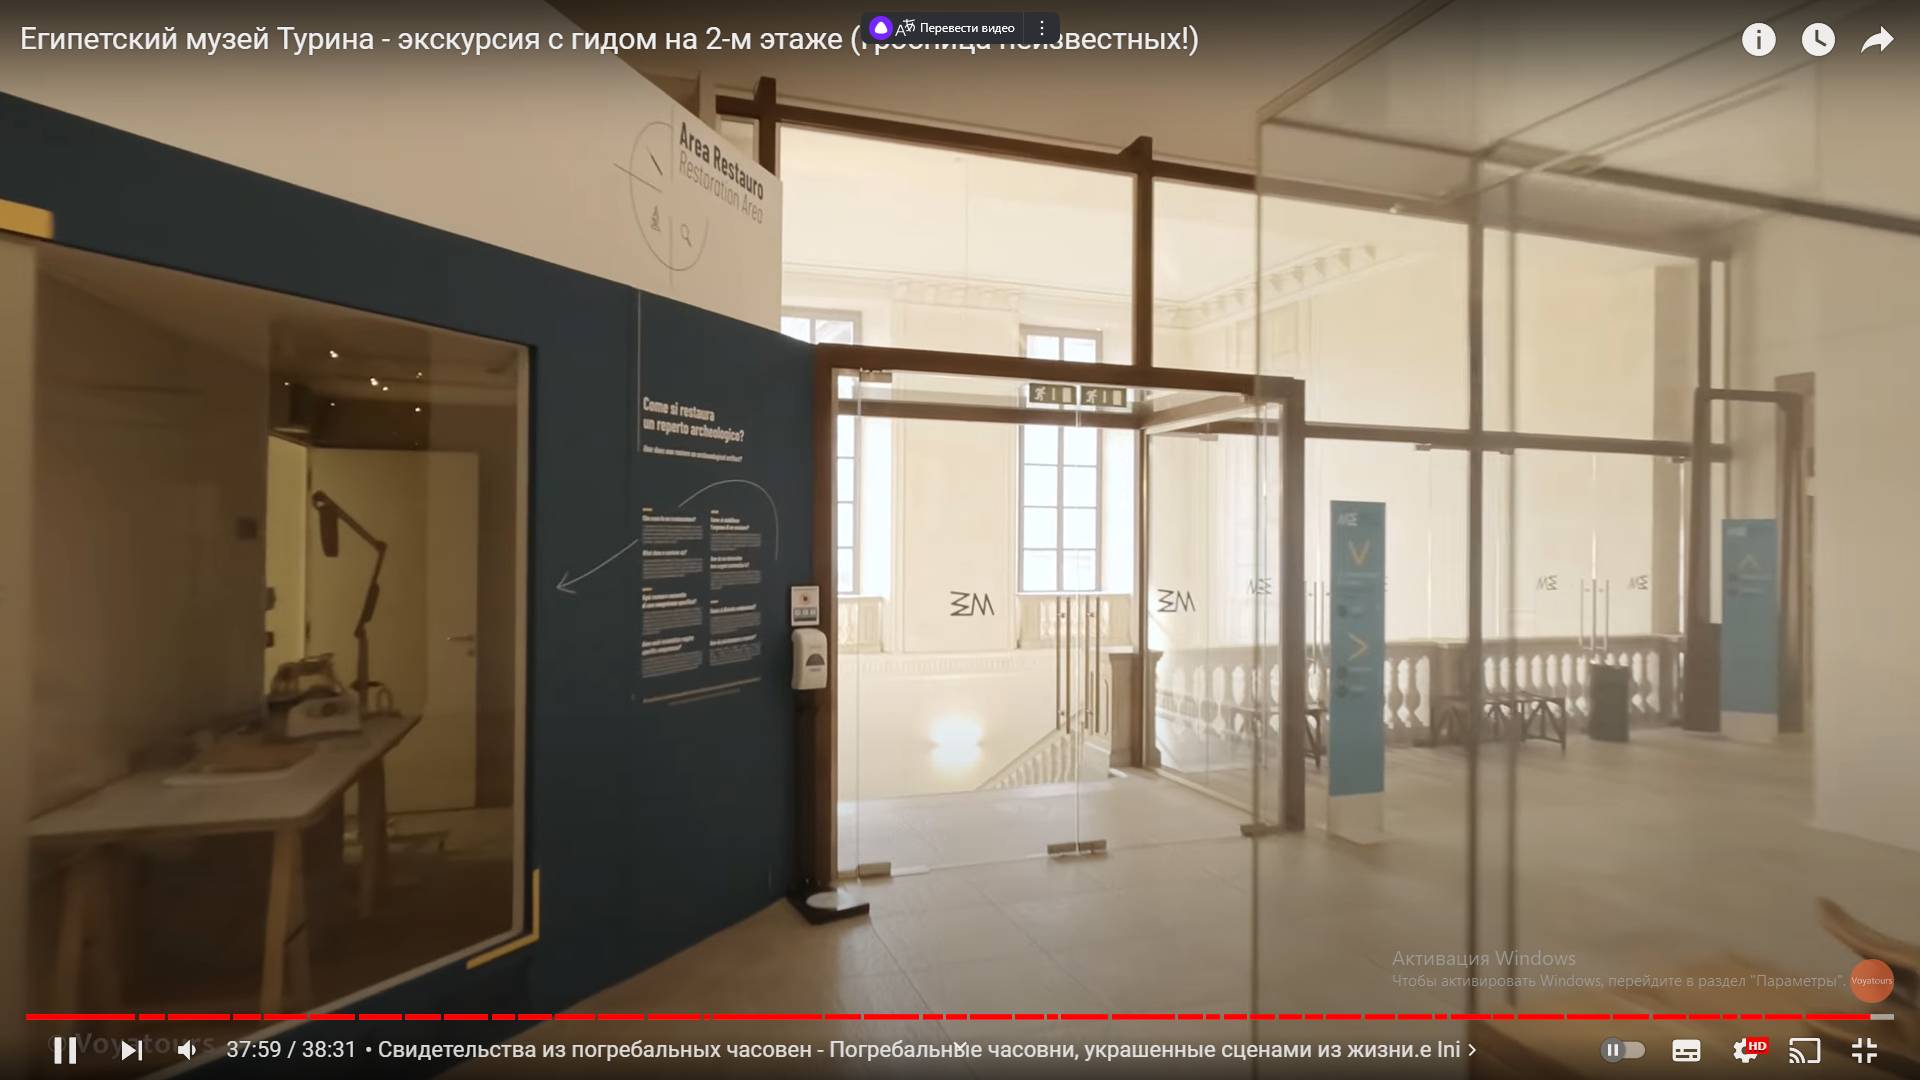 Цитата из видео «Египетский музей Турина — экскурсия с гидом на 2-м этаже (Гробница неизвестных!)» пользователя Voyatours, youtube.com